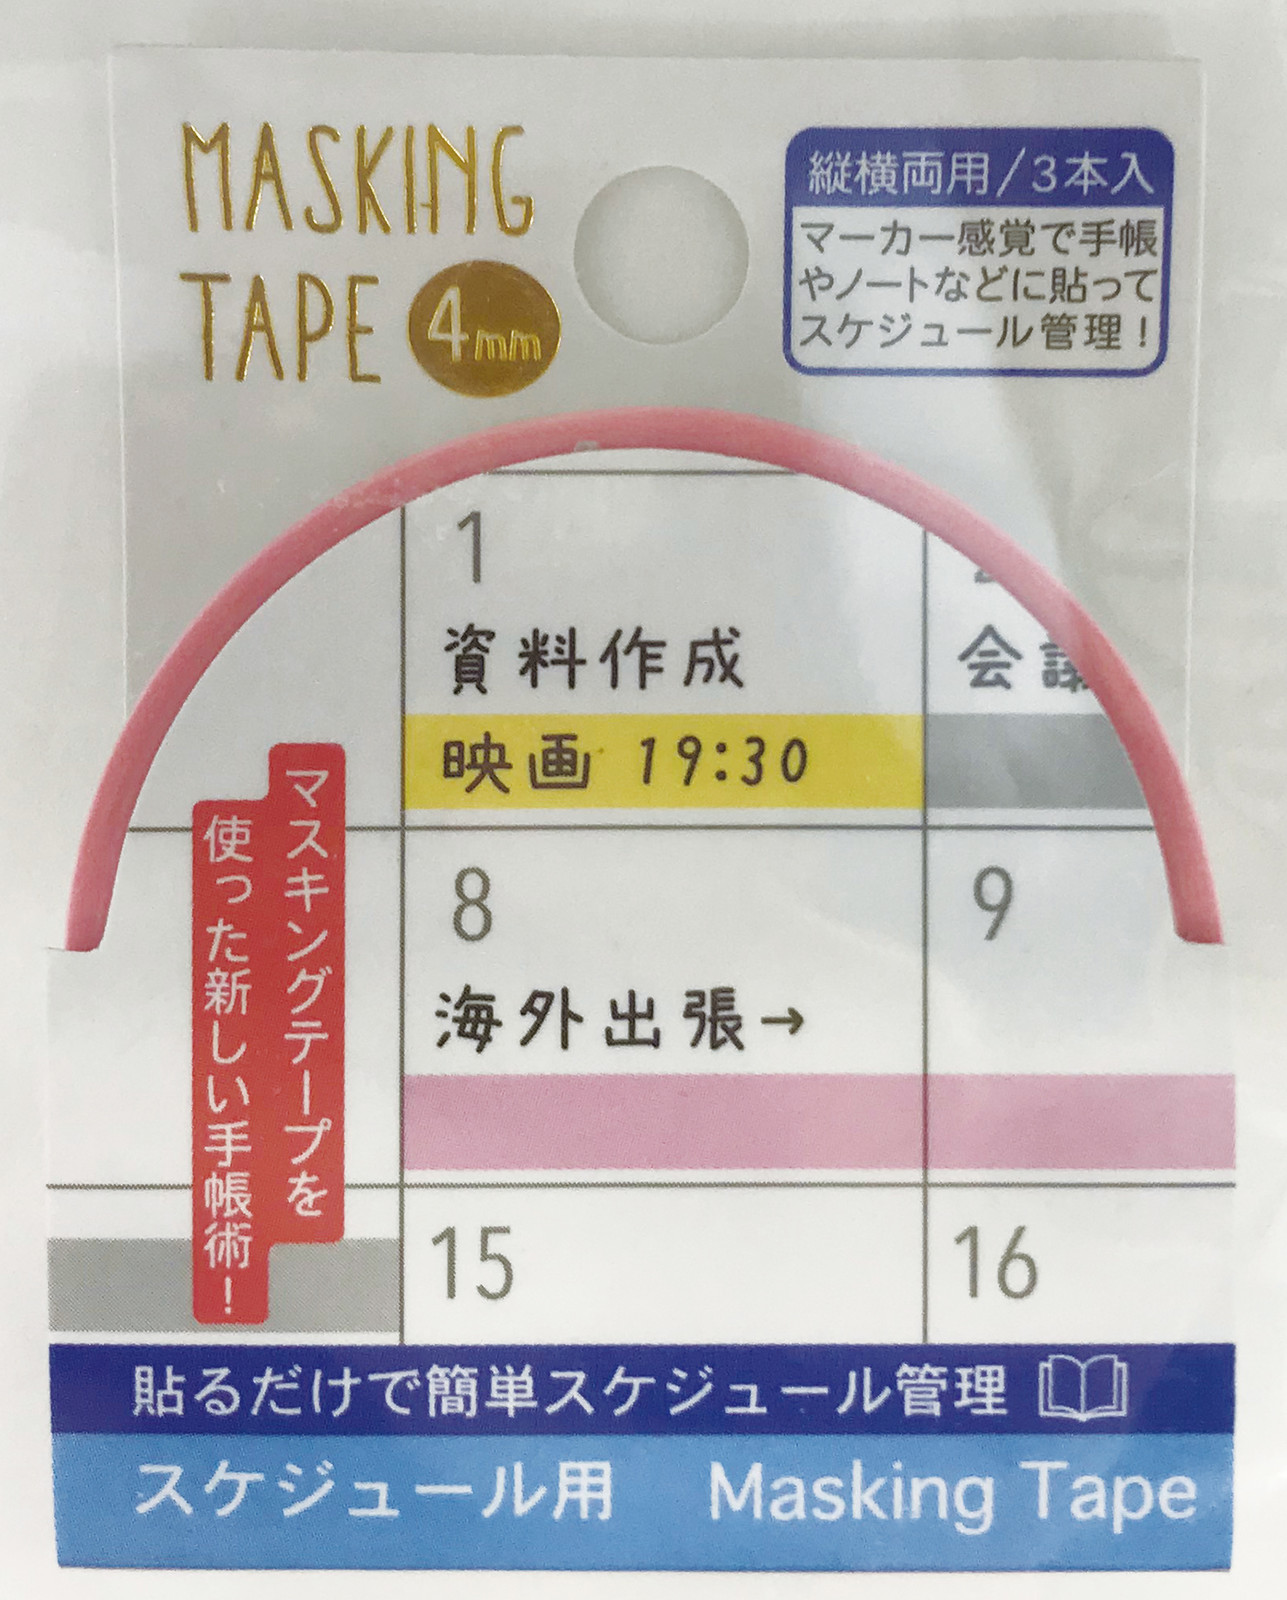 スケジュール用マスキングテープ4mm マーカーペン 3個入り テレワーク マスキングテープ 整理 メモの商品ページ 卸 仕入れサイト スーパーデリバリー